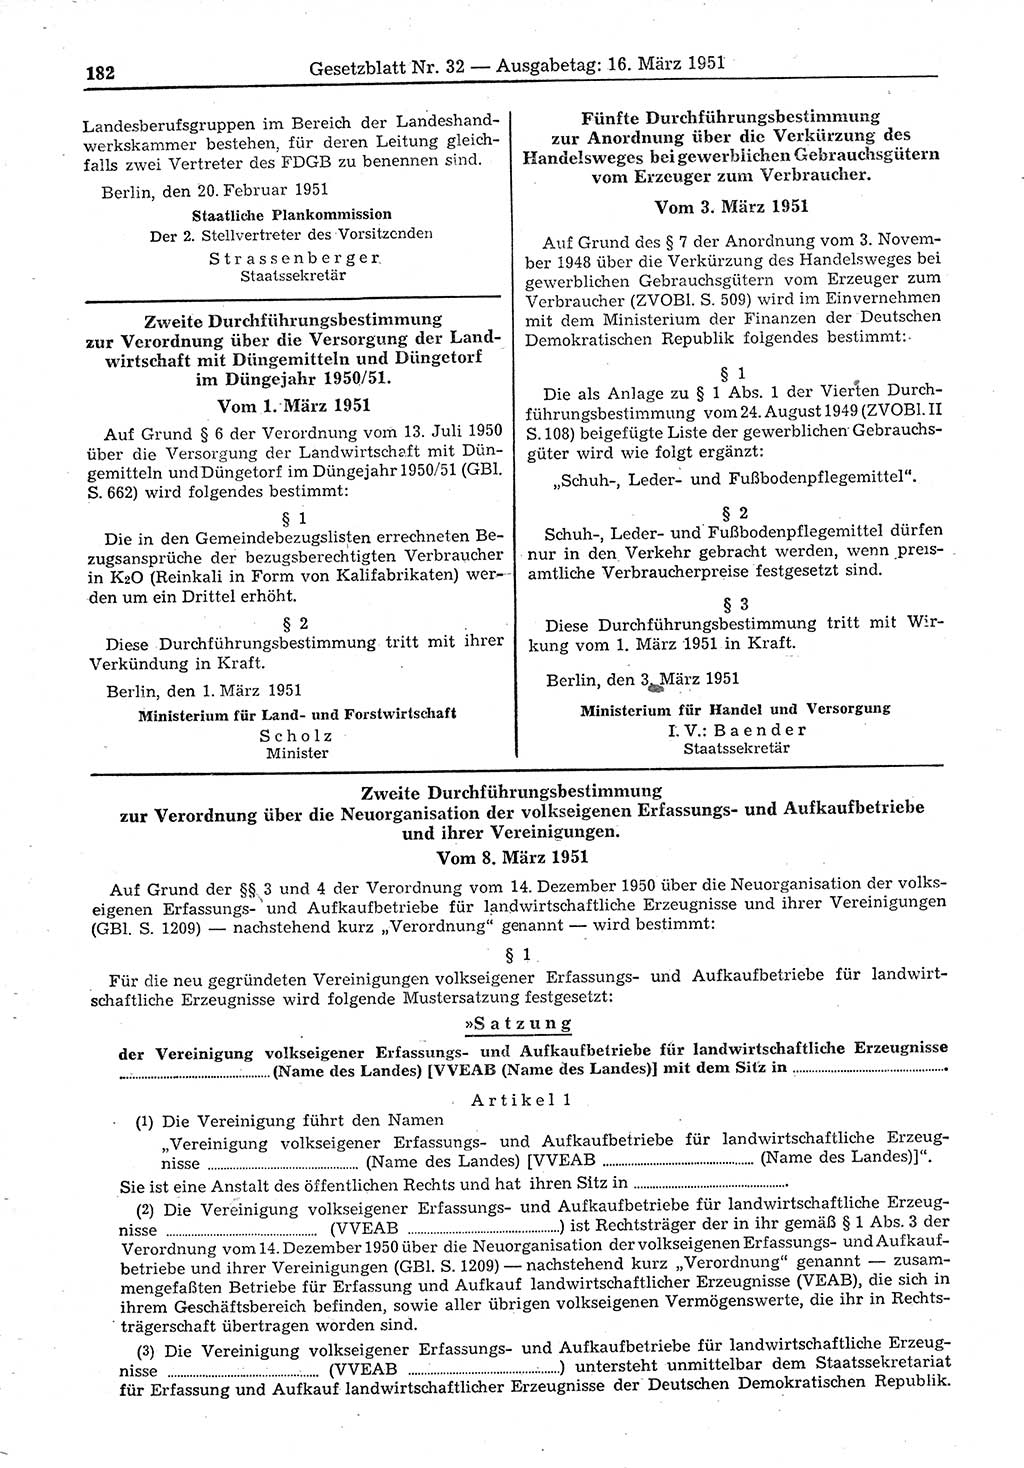 Gesetzblatt (GBl.) der Deutschen Demokratischen Republik (DDR) 1951, Seite 182 (GBl. DDR 1951, S. 182)